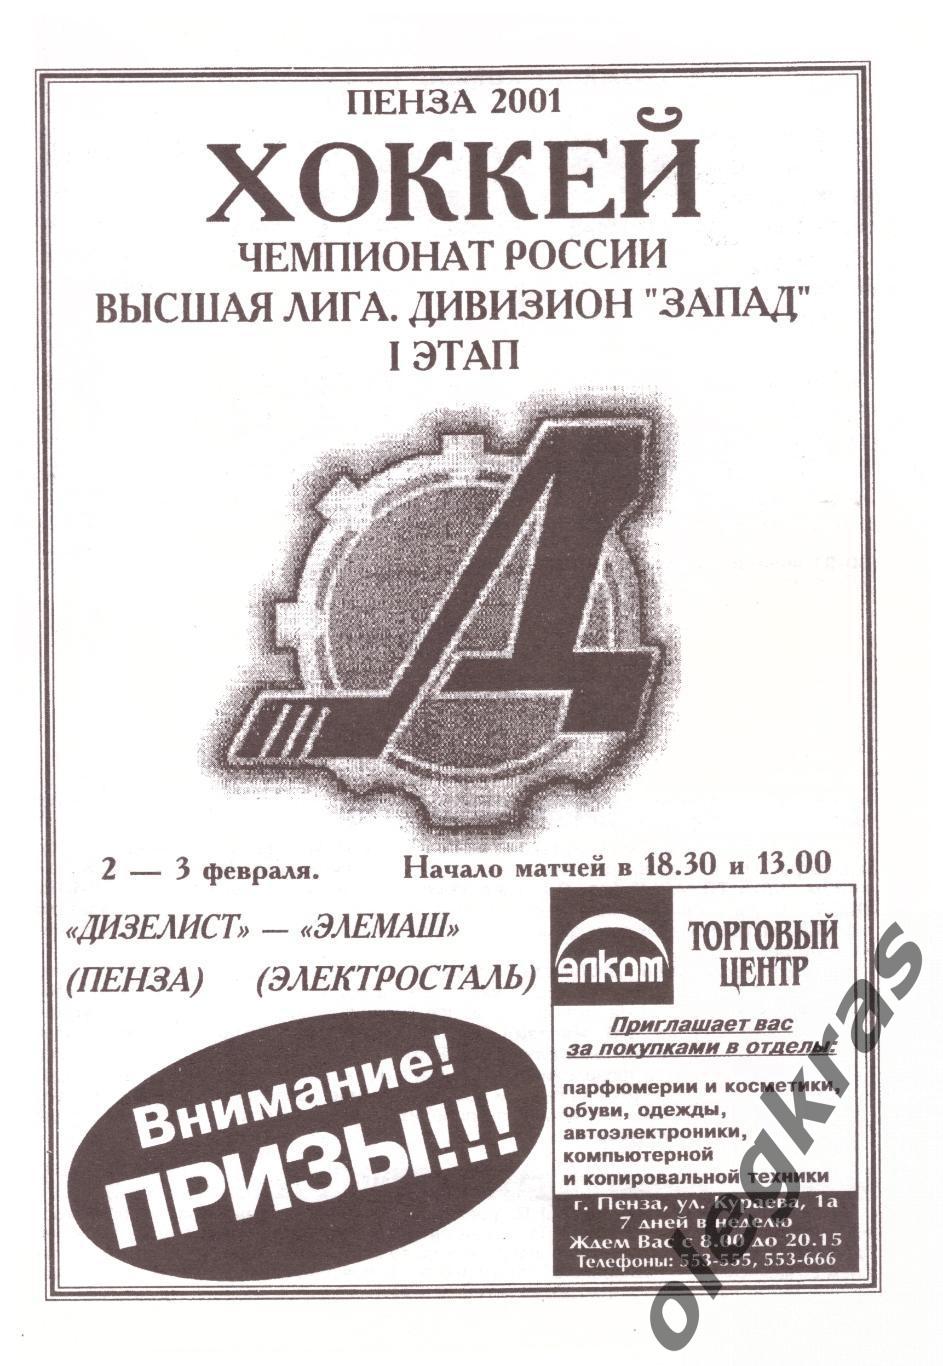 Дизелист(Пенза) - Элемаш(Электросталь) - 2-3 февраля 2001 года.